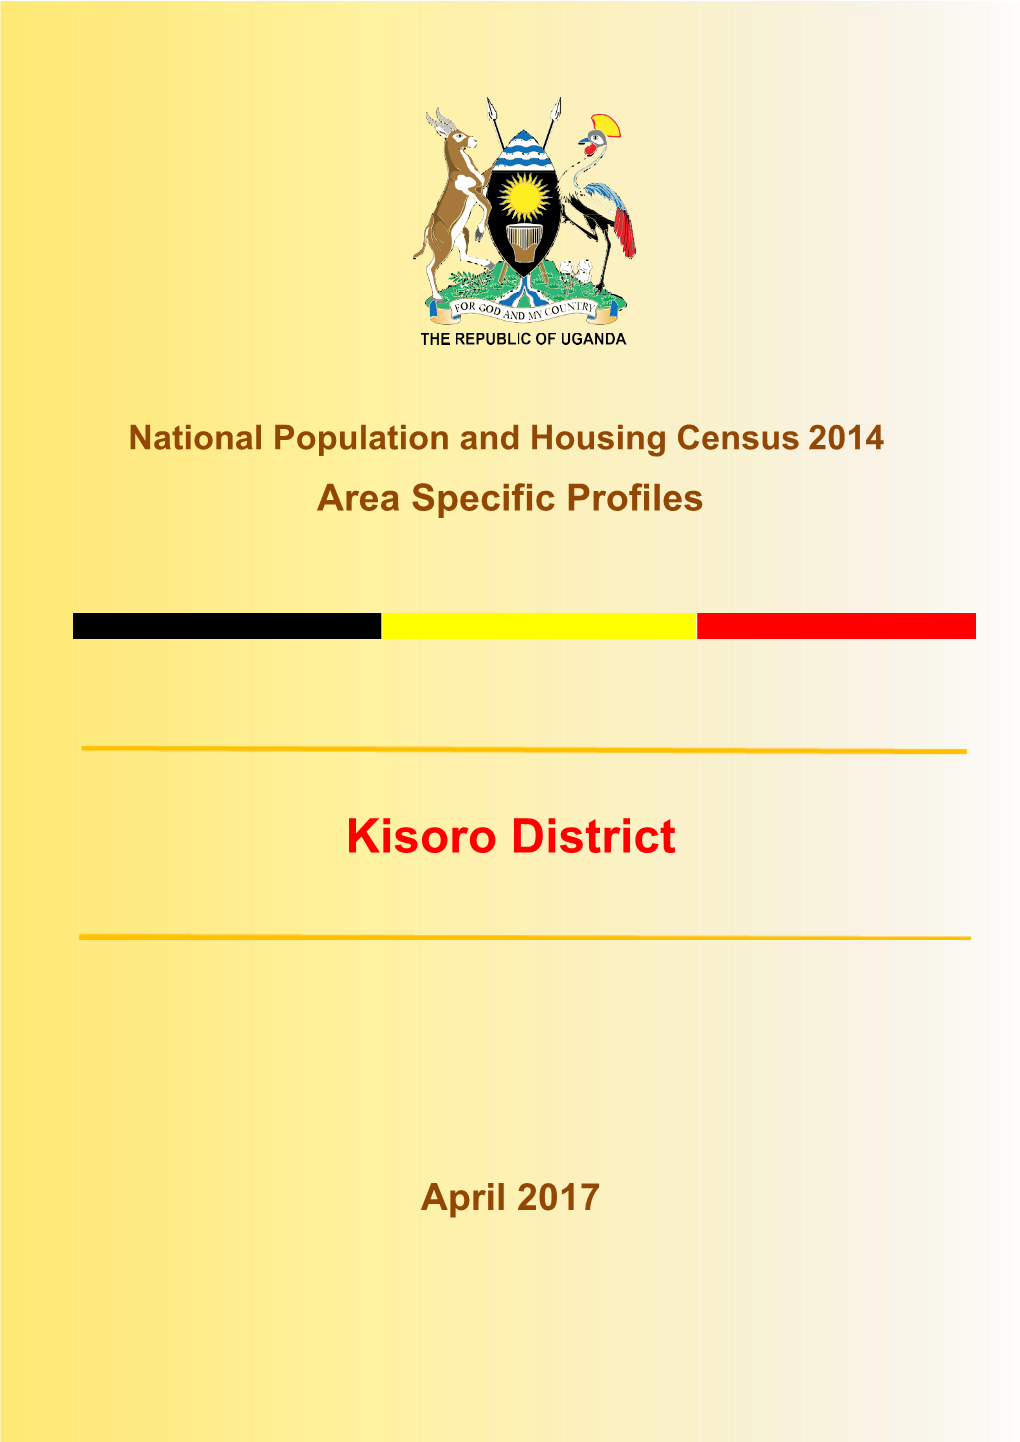 Kisoro District